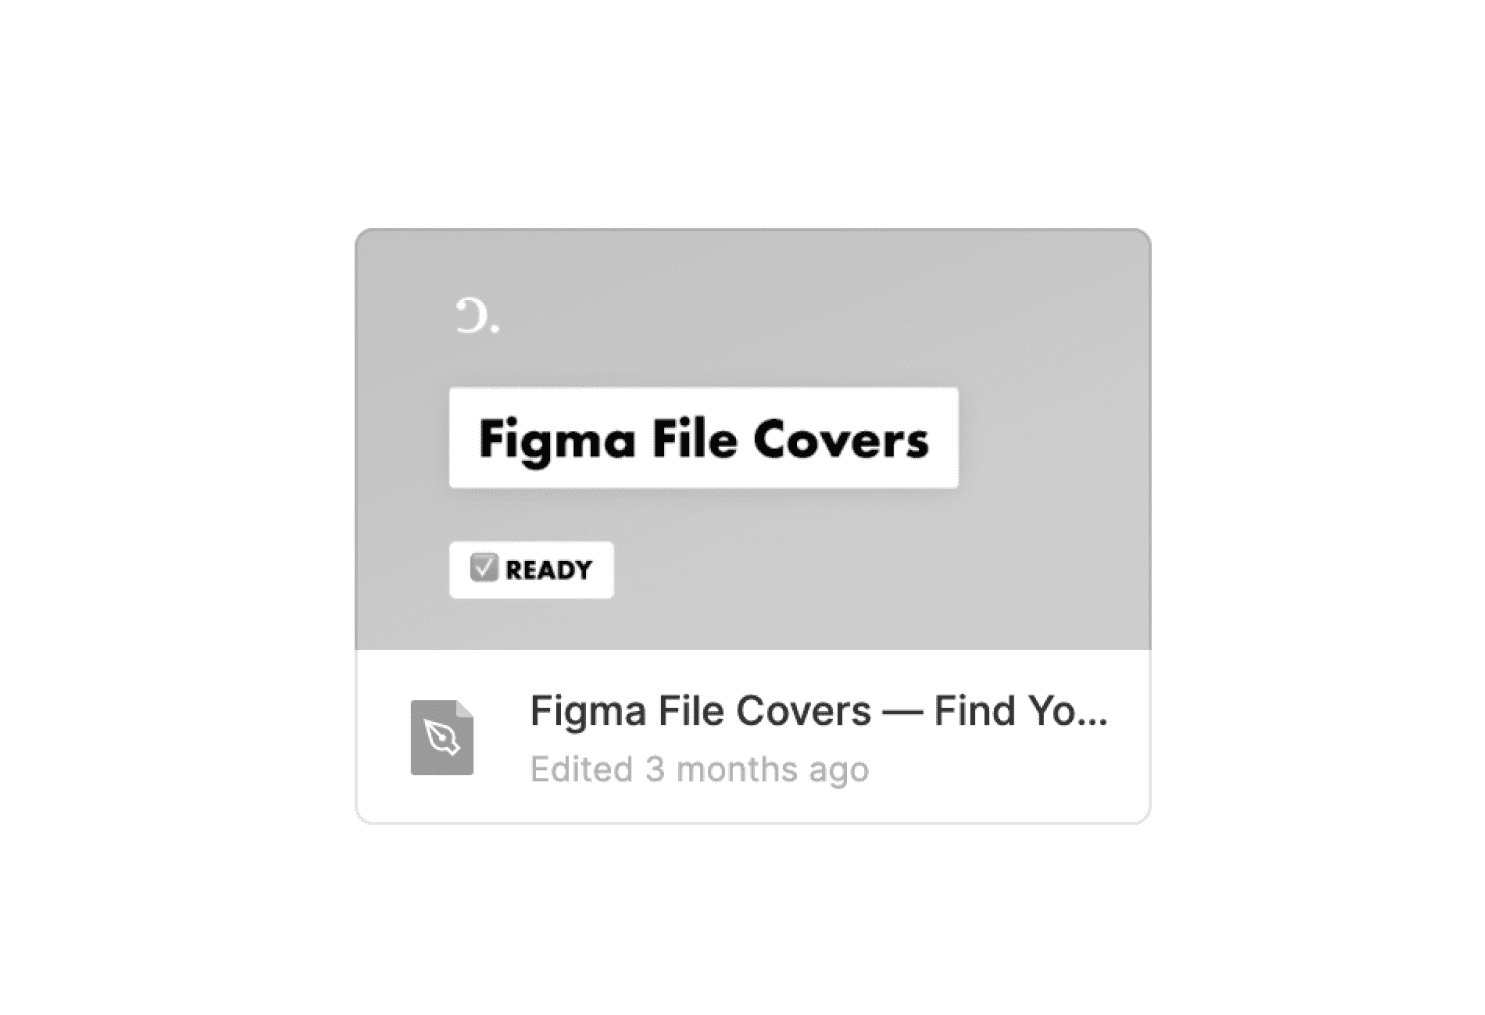 Figma File Covers